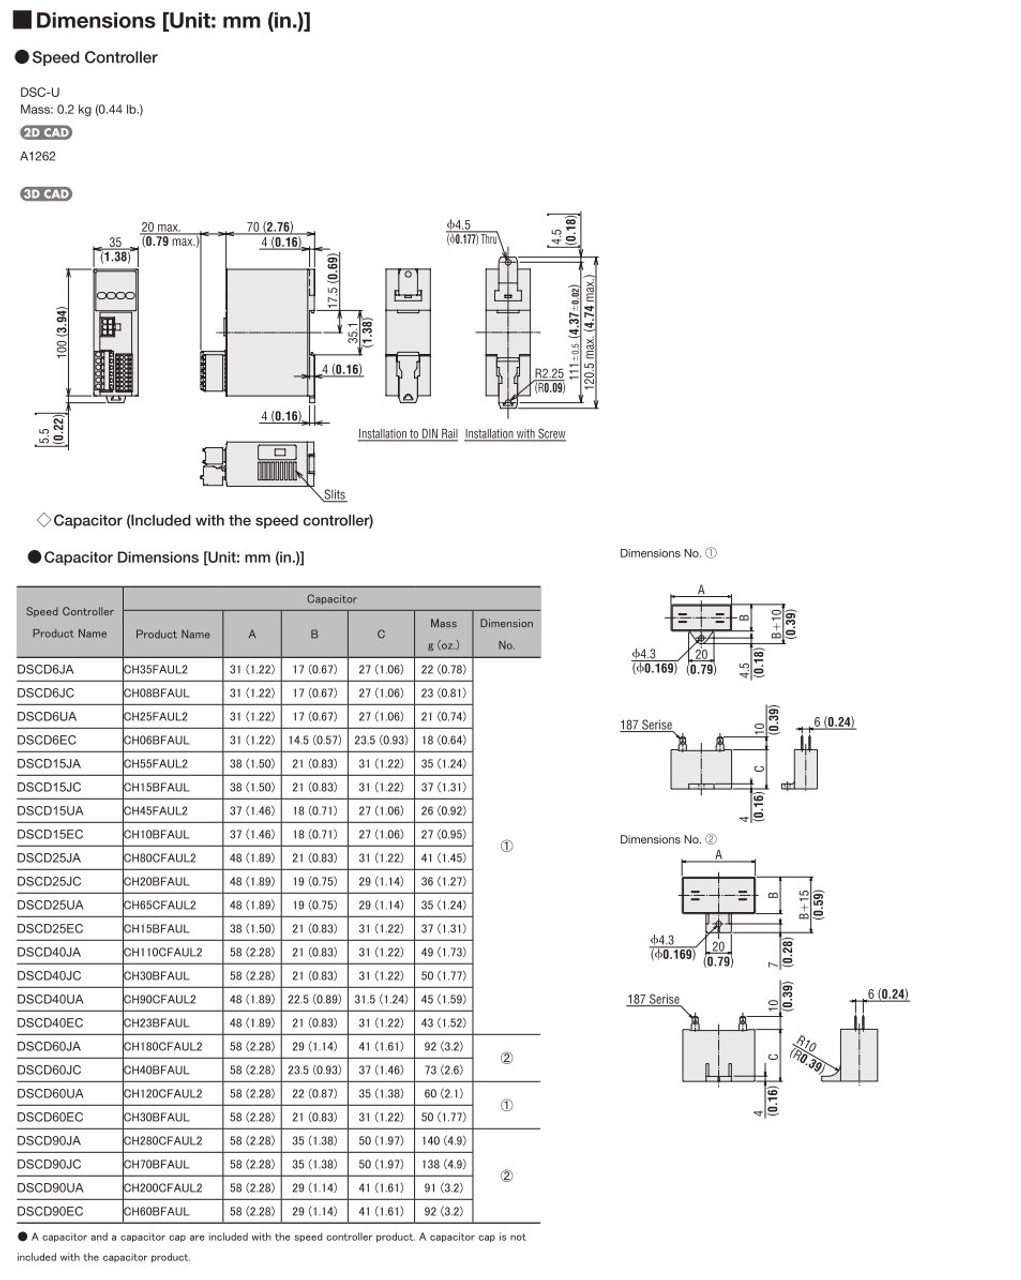 SCM425EC-12.5 / DSCD25EC - Dimensions